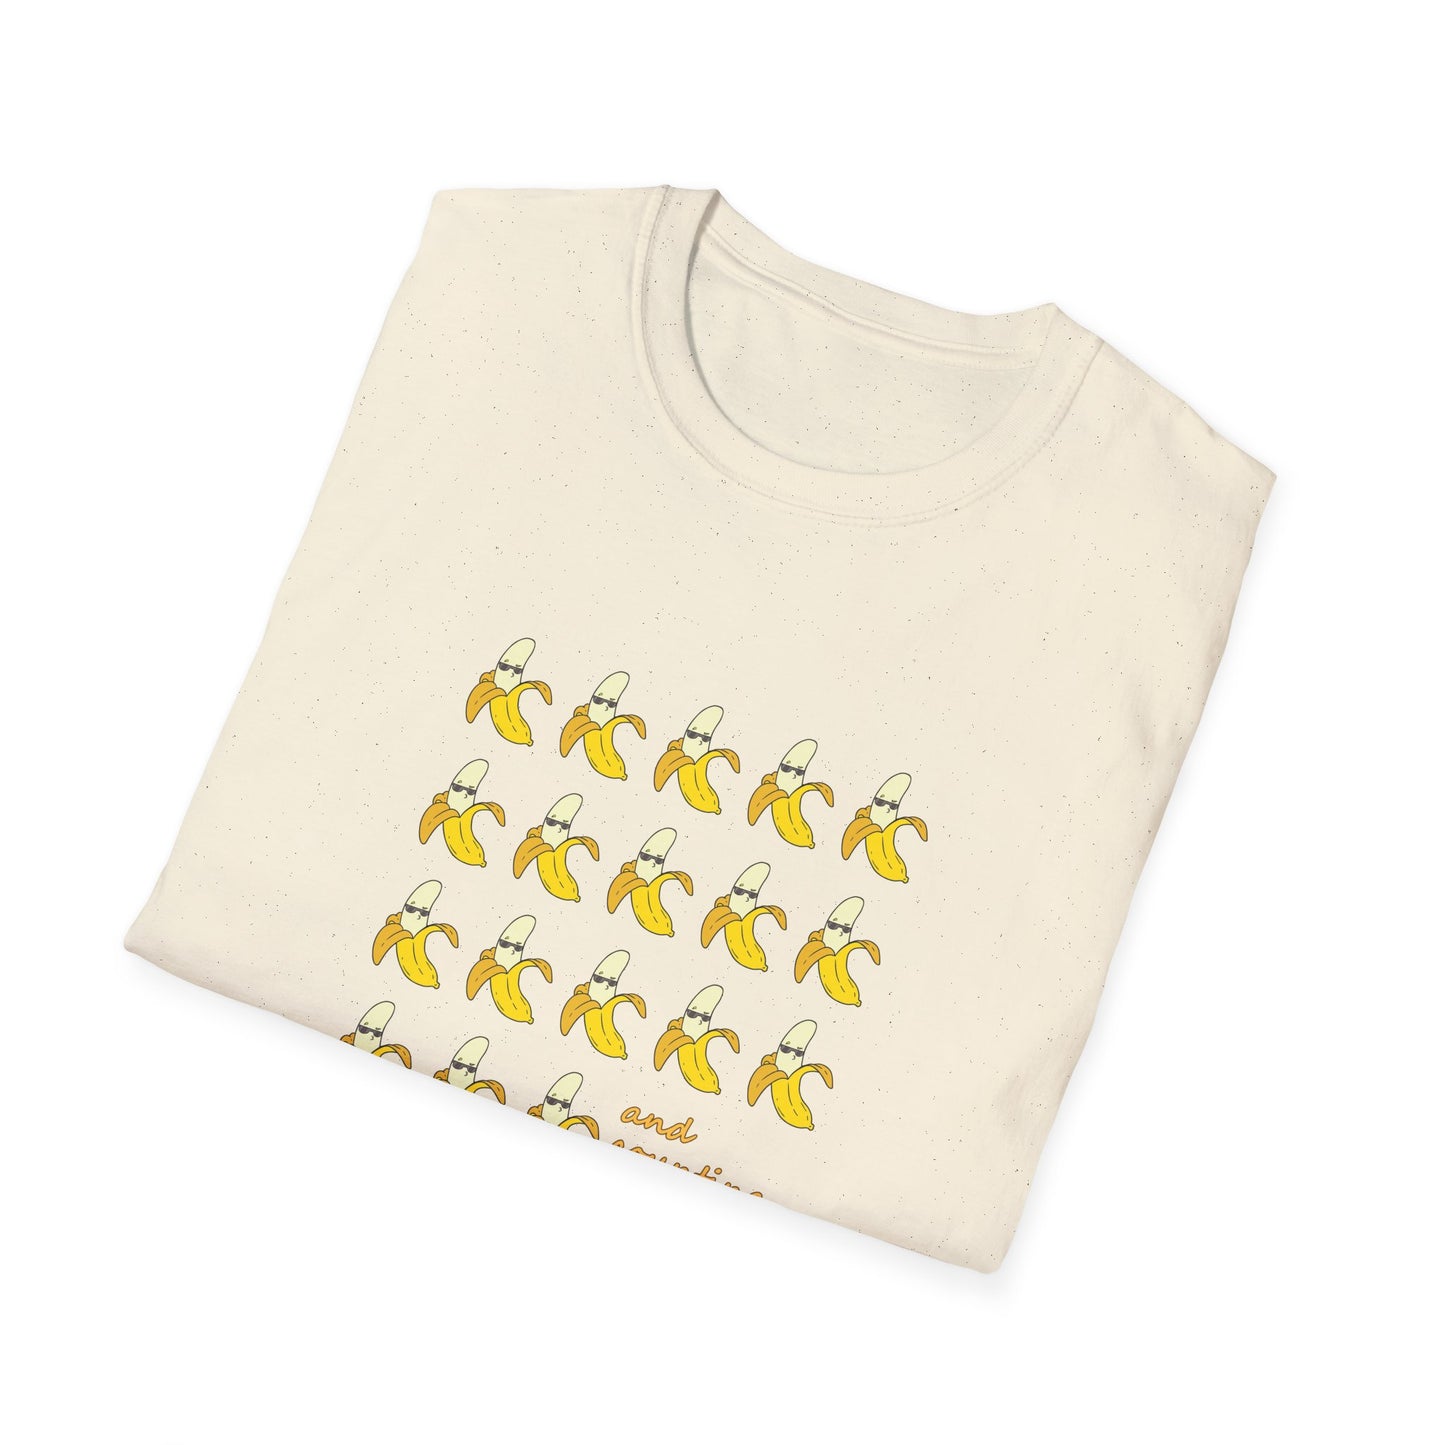 IYKYK Bananas - Unisex Softstyle T-Shirt